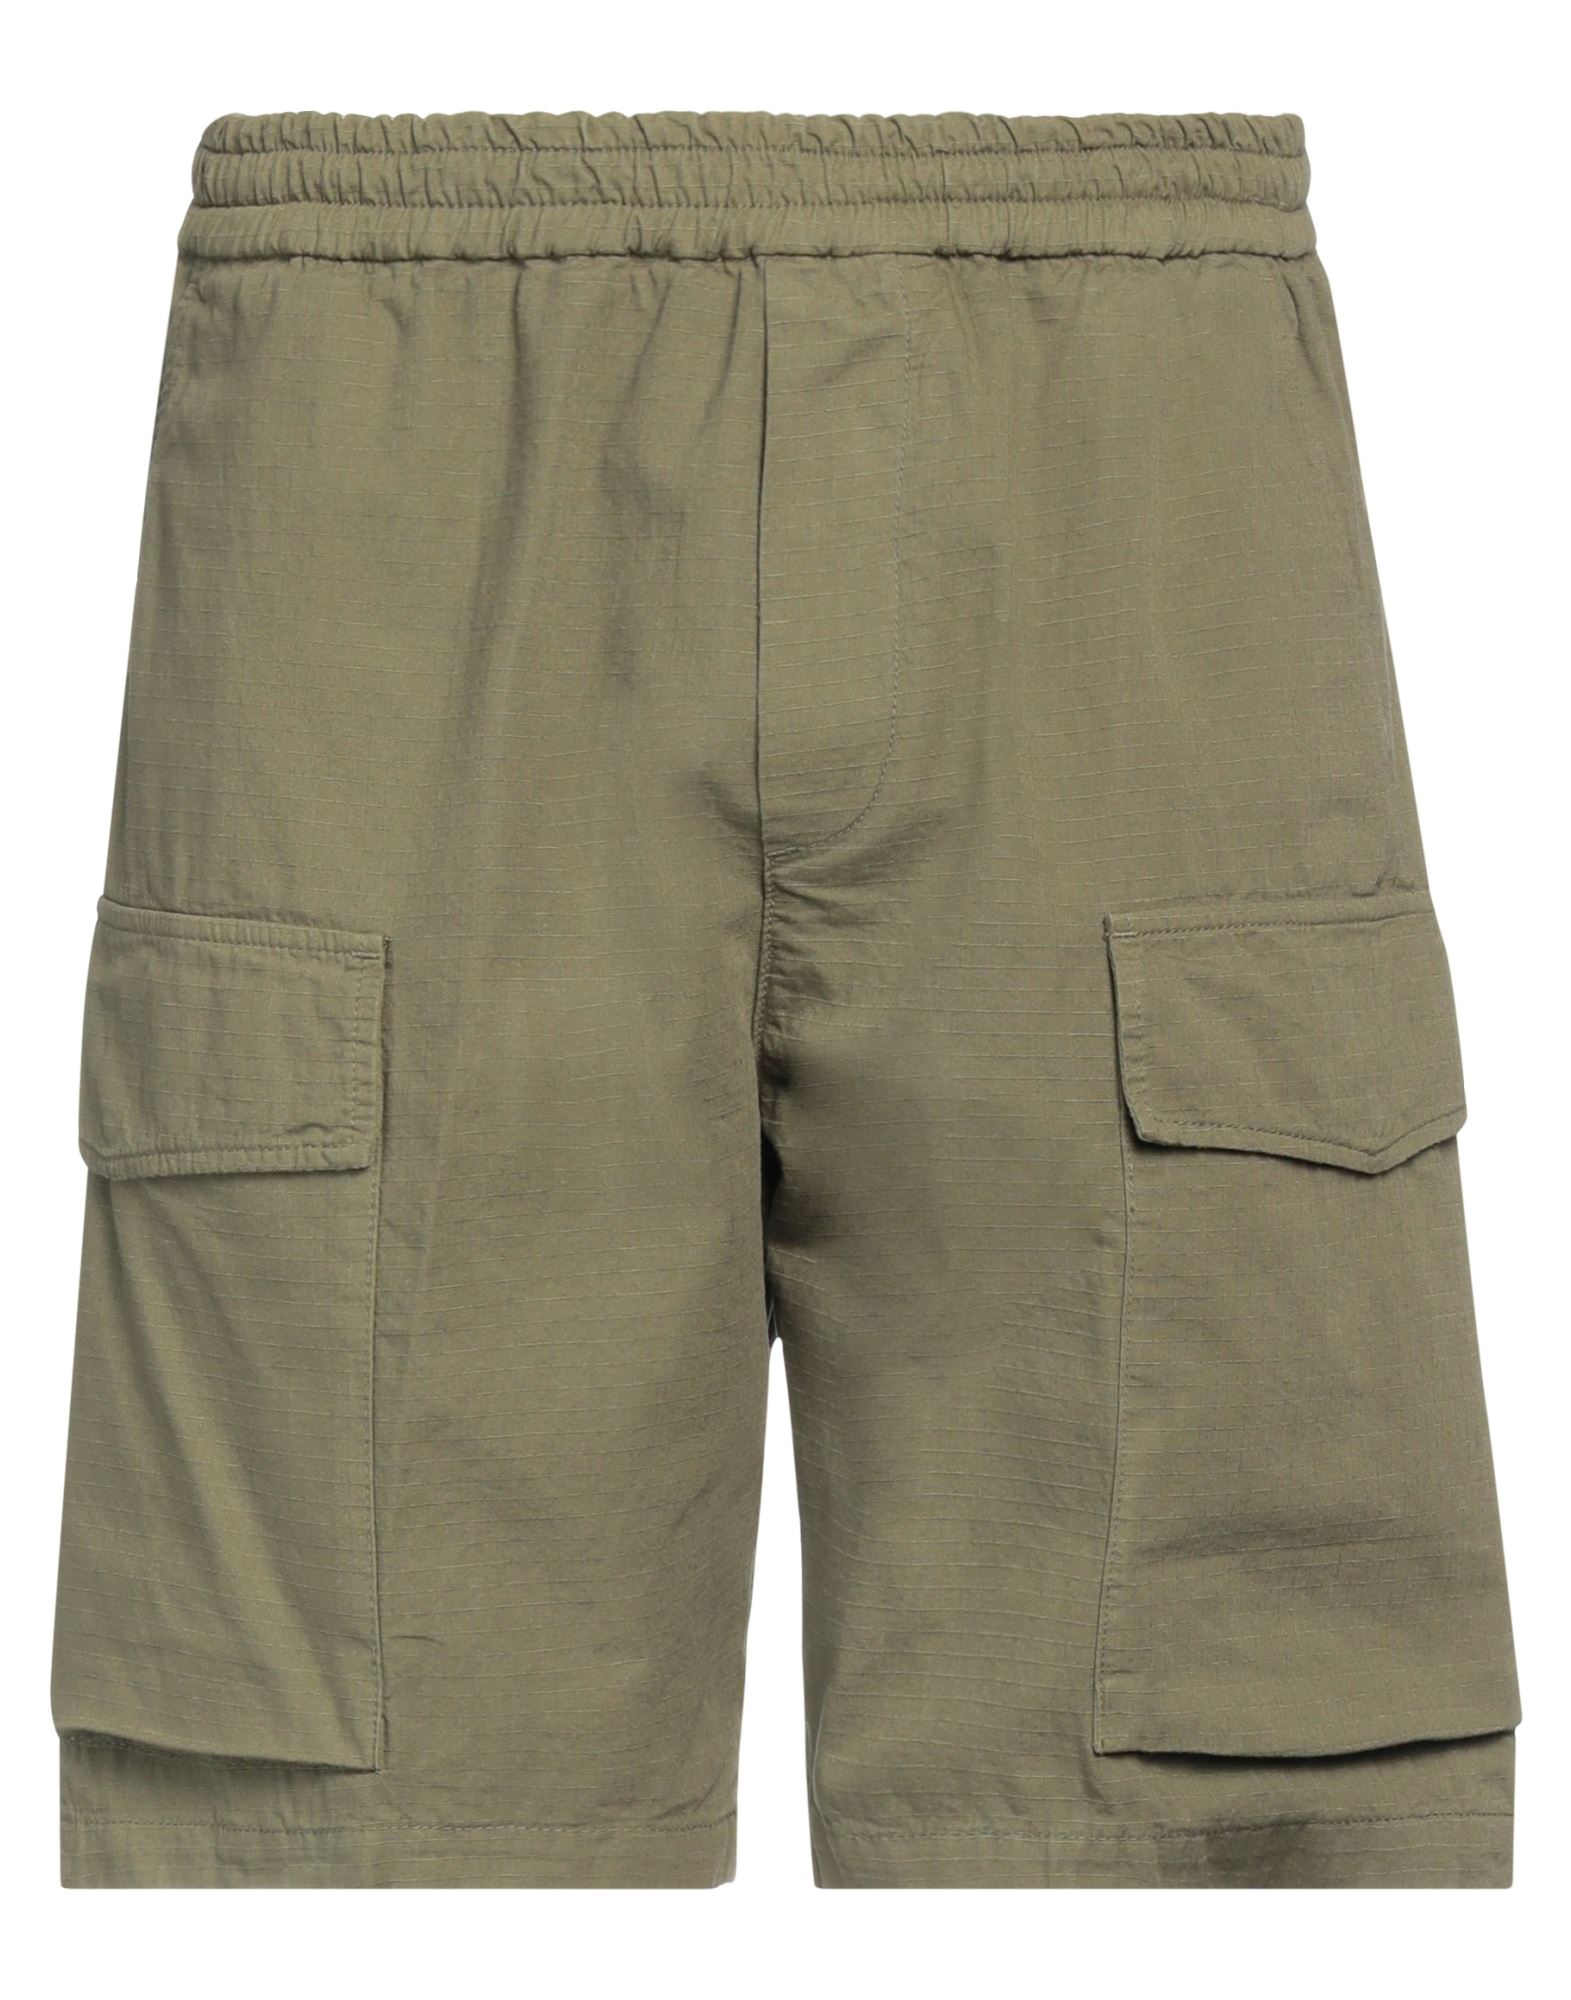 Cruna Man Shorts & Bermuda Shorts Military Green Size 40 Cotton